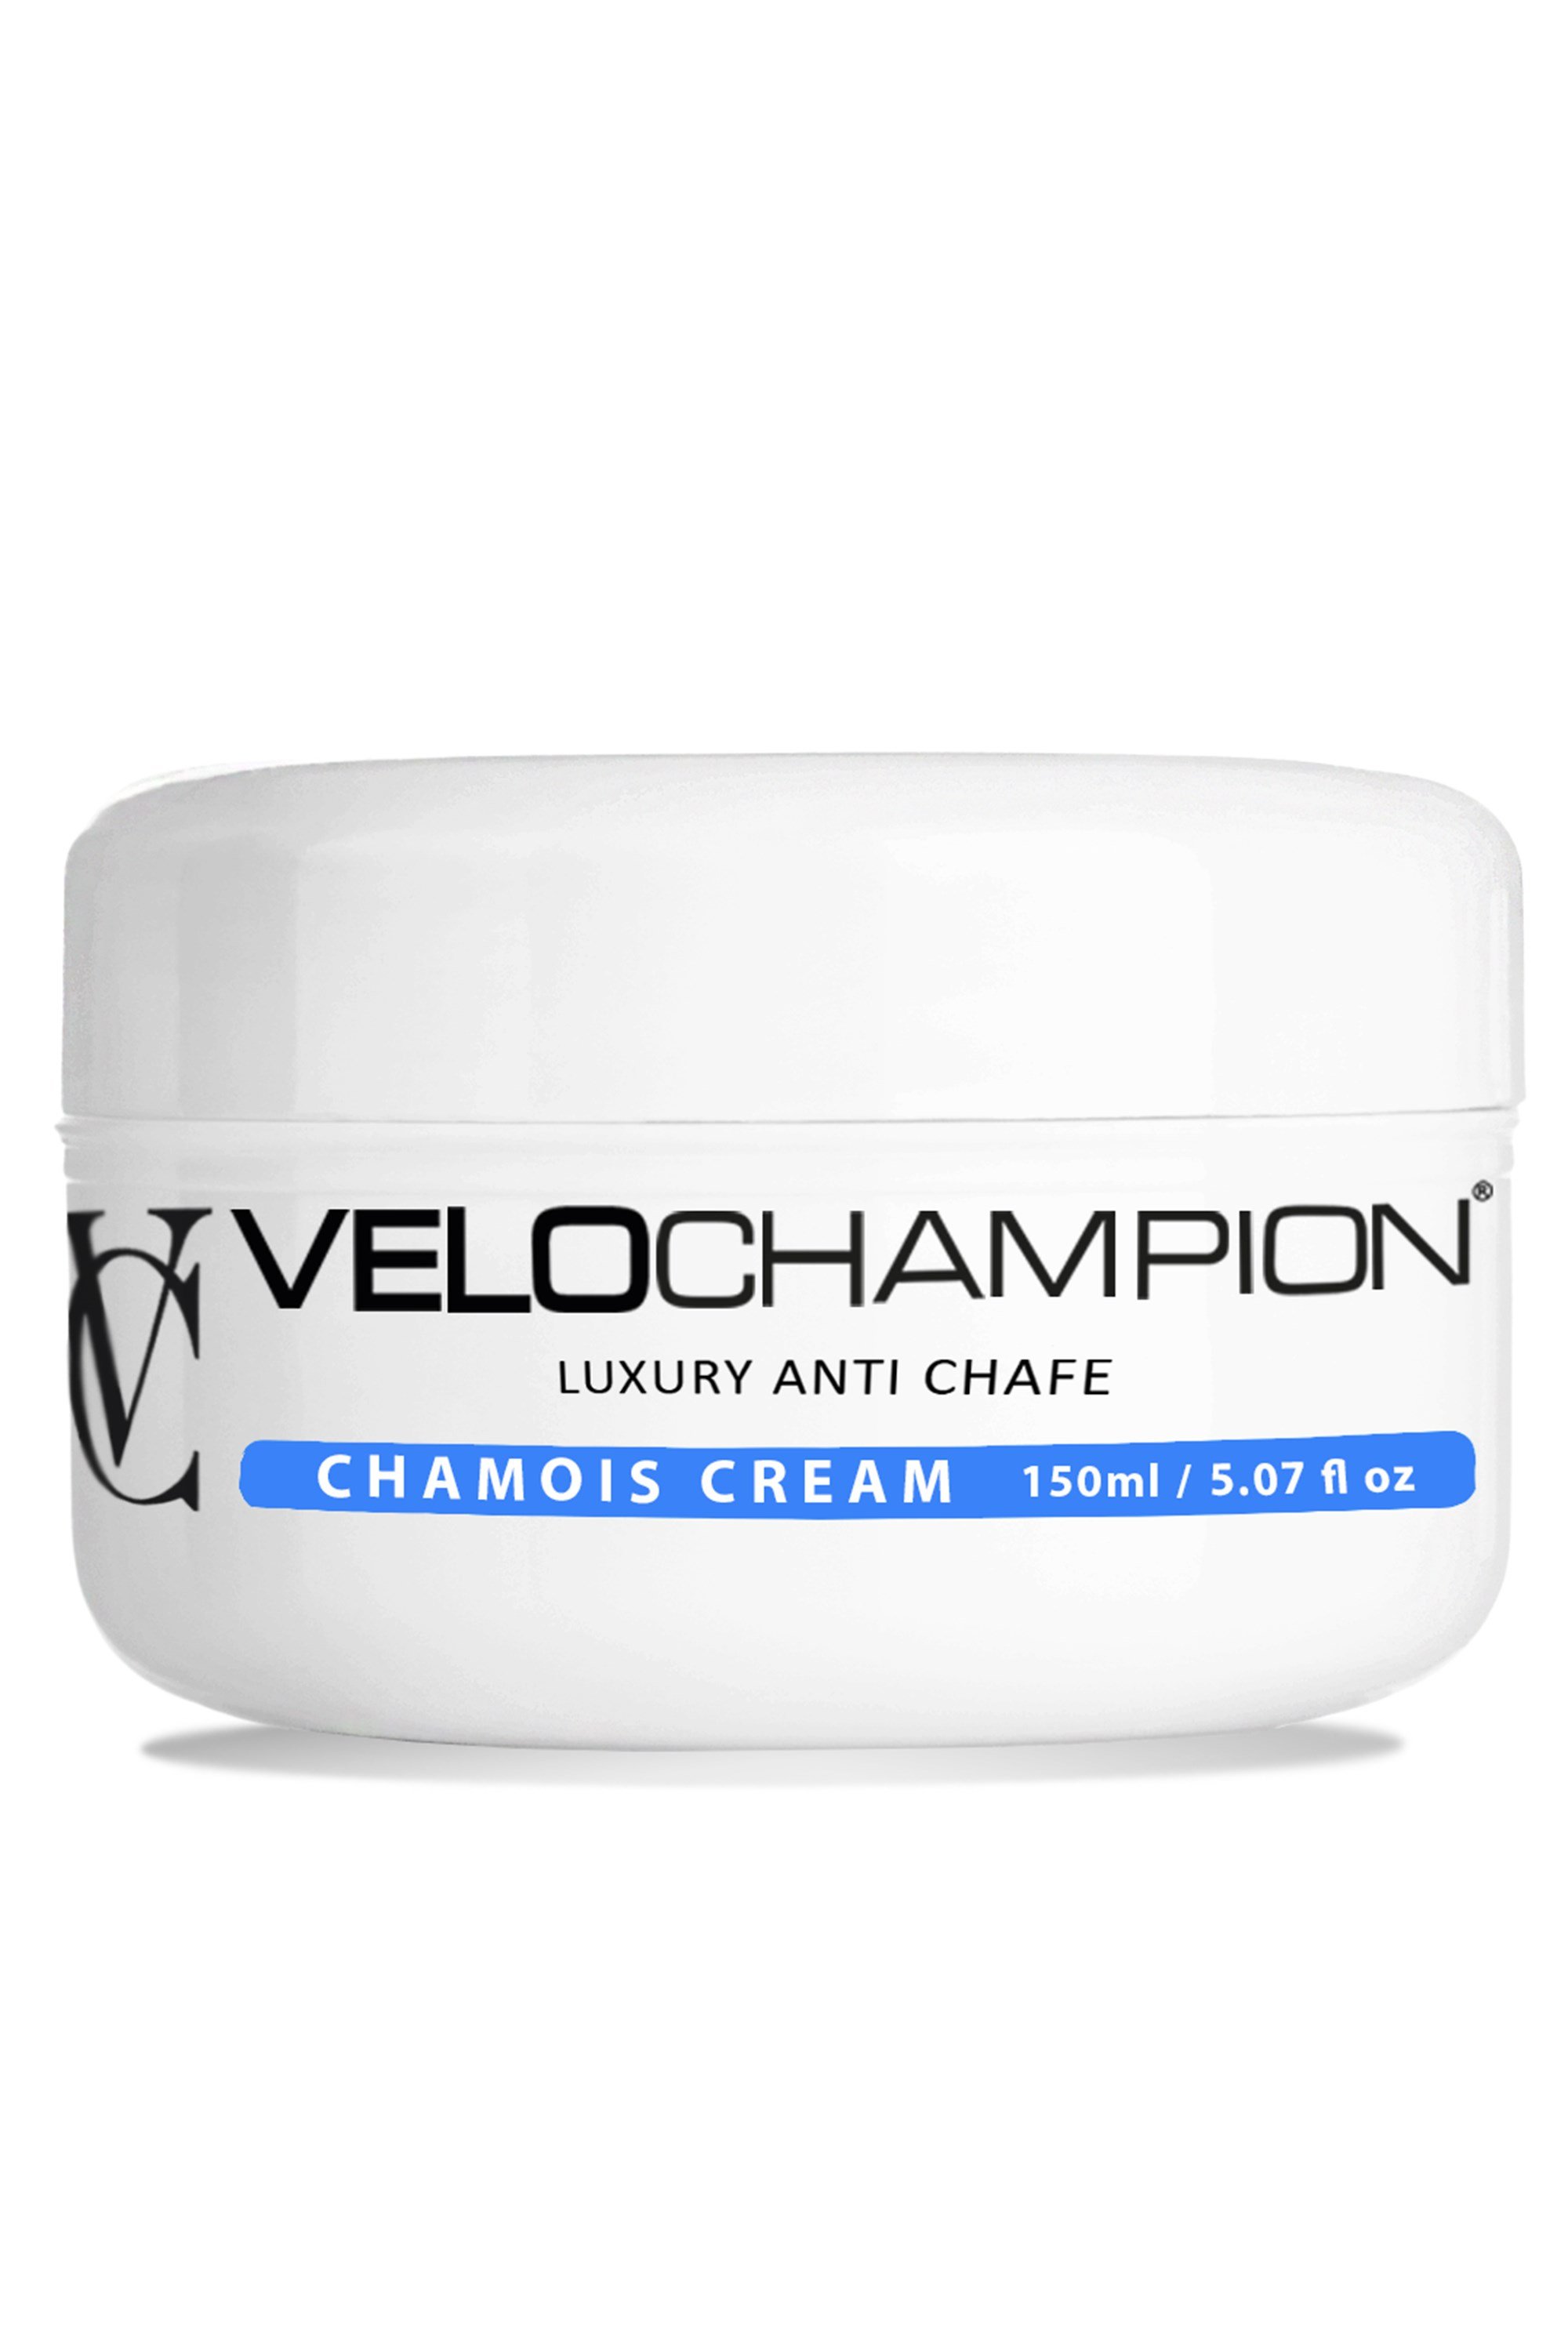 Luxury Anti Chafe Cycling Chamois Cream 150ml -